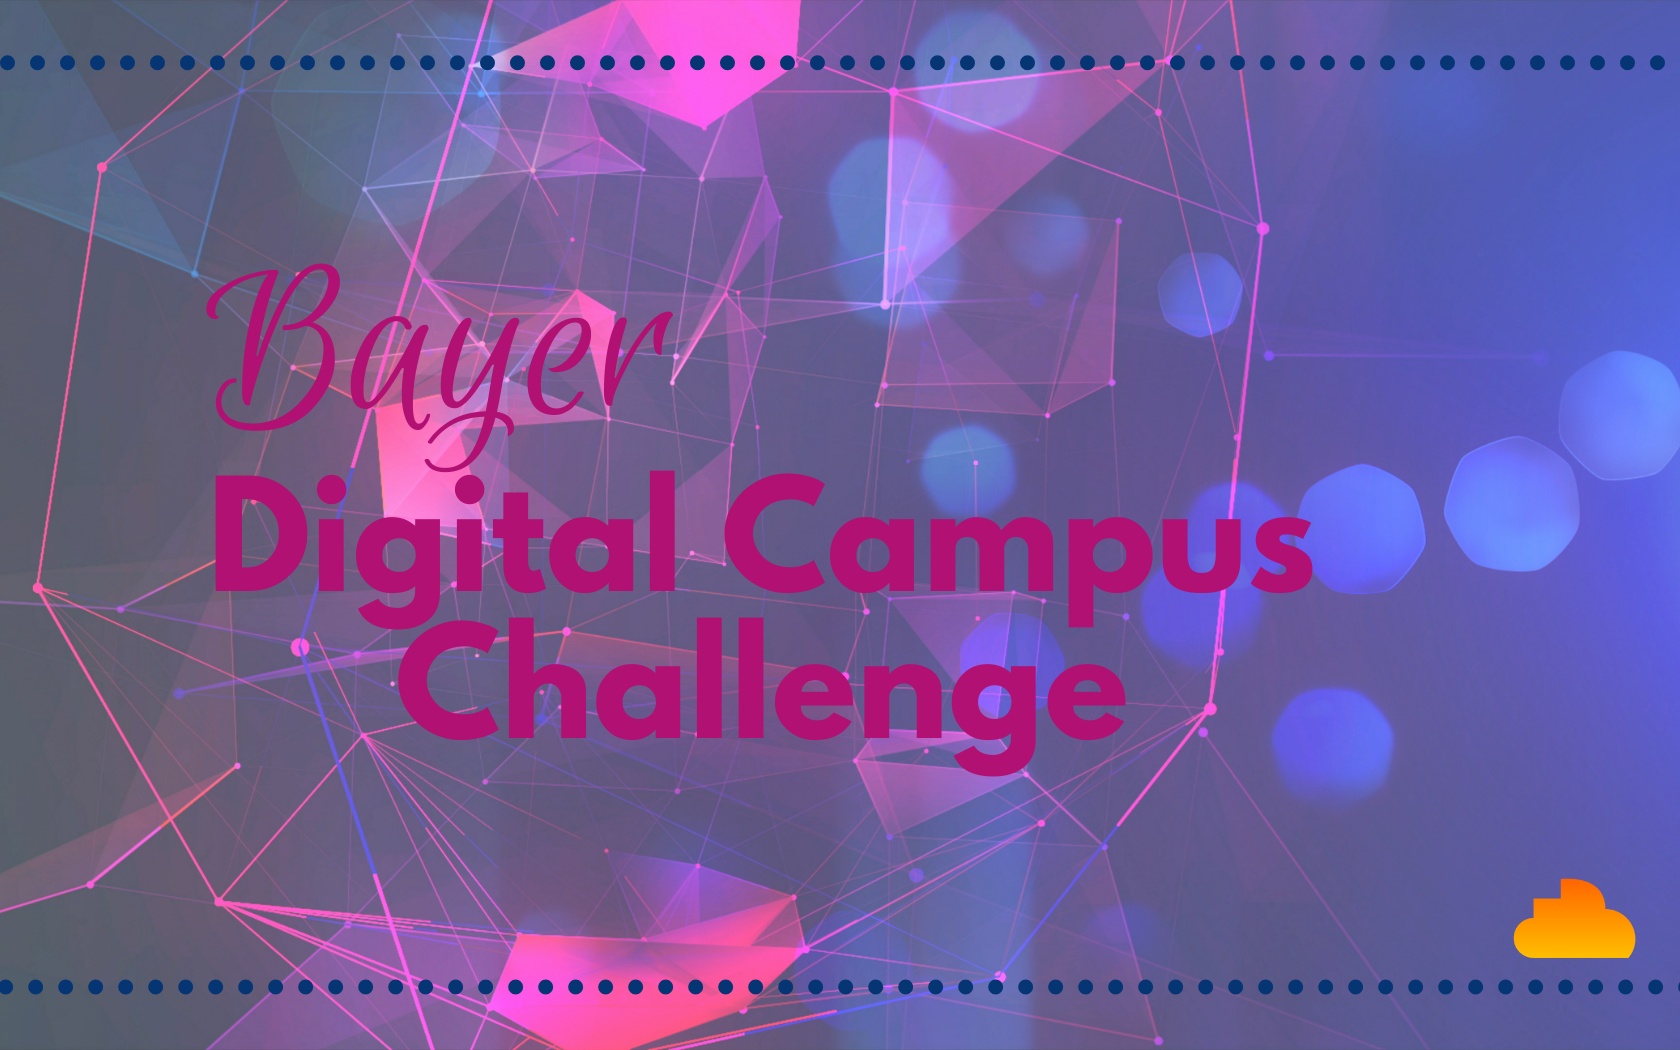 Bayer Digital Campus Challenge